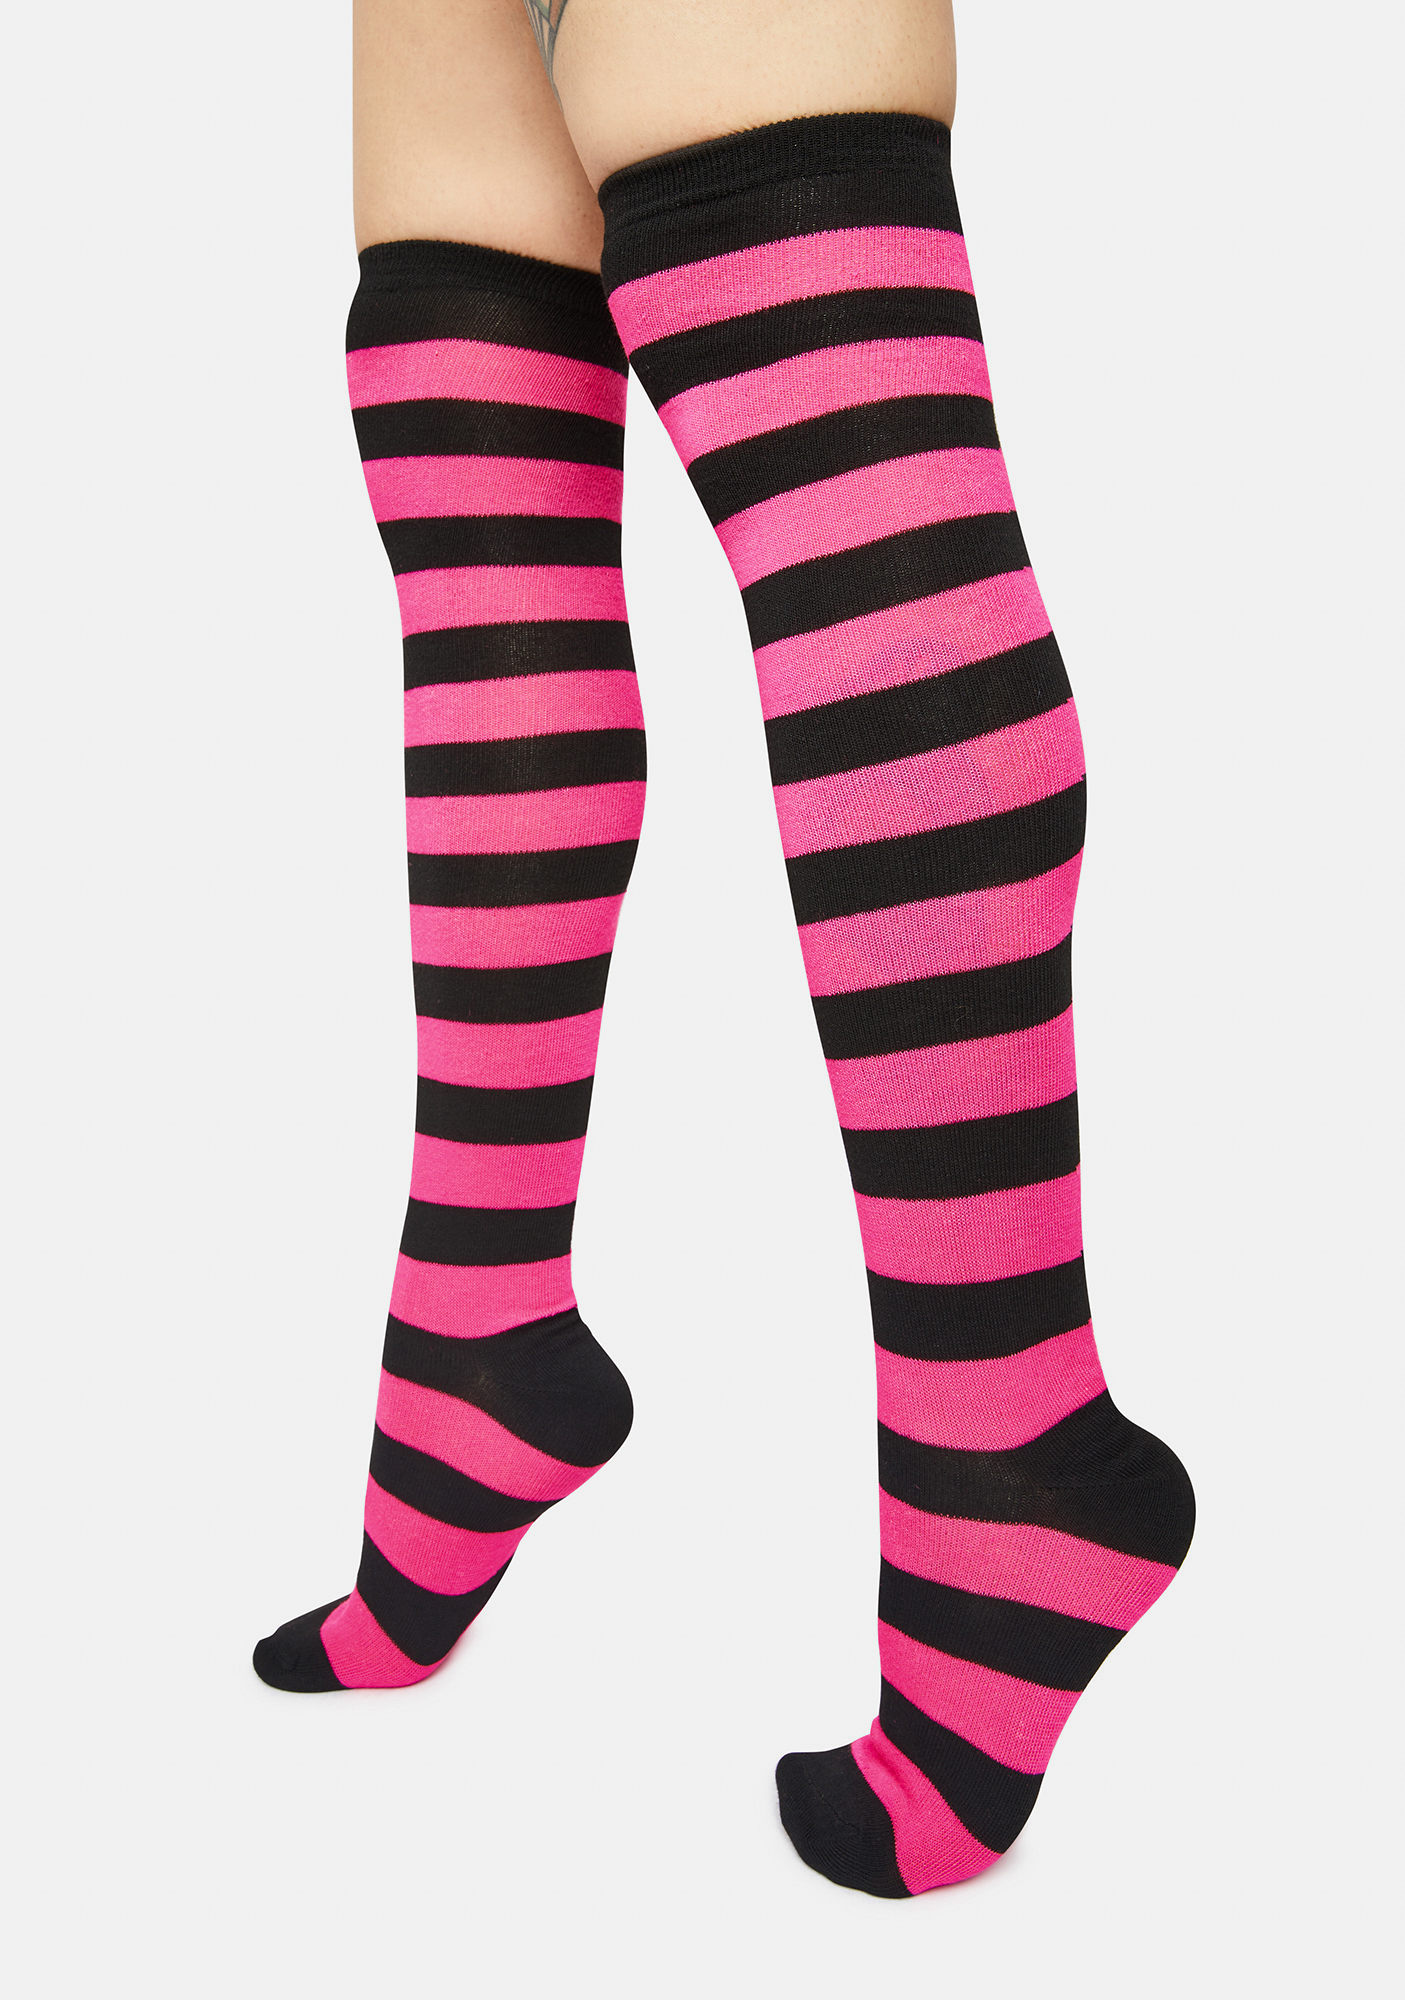 Striped Knee High Socks Black Pink Dolls Kill